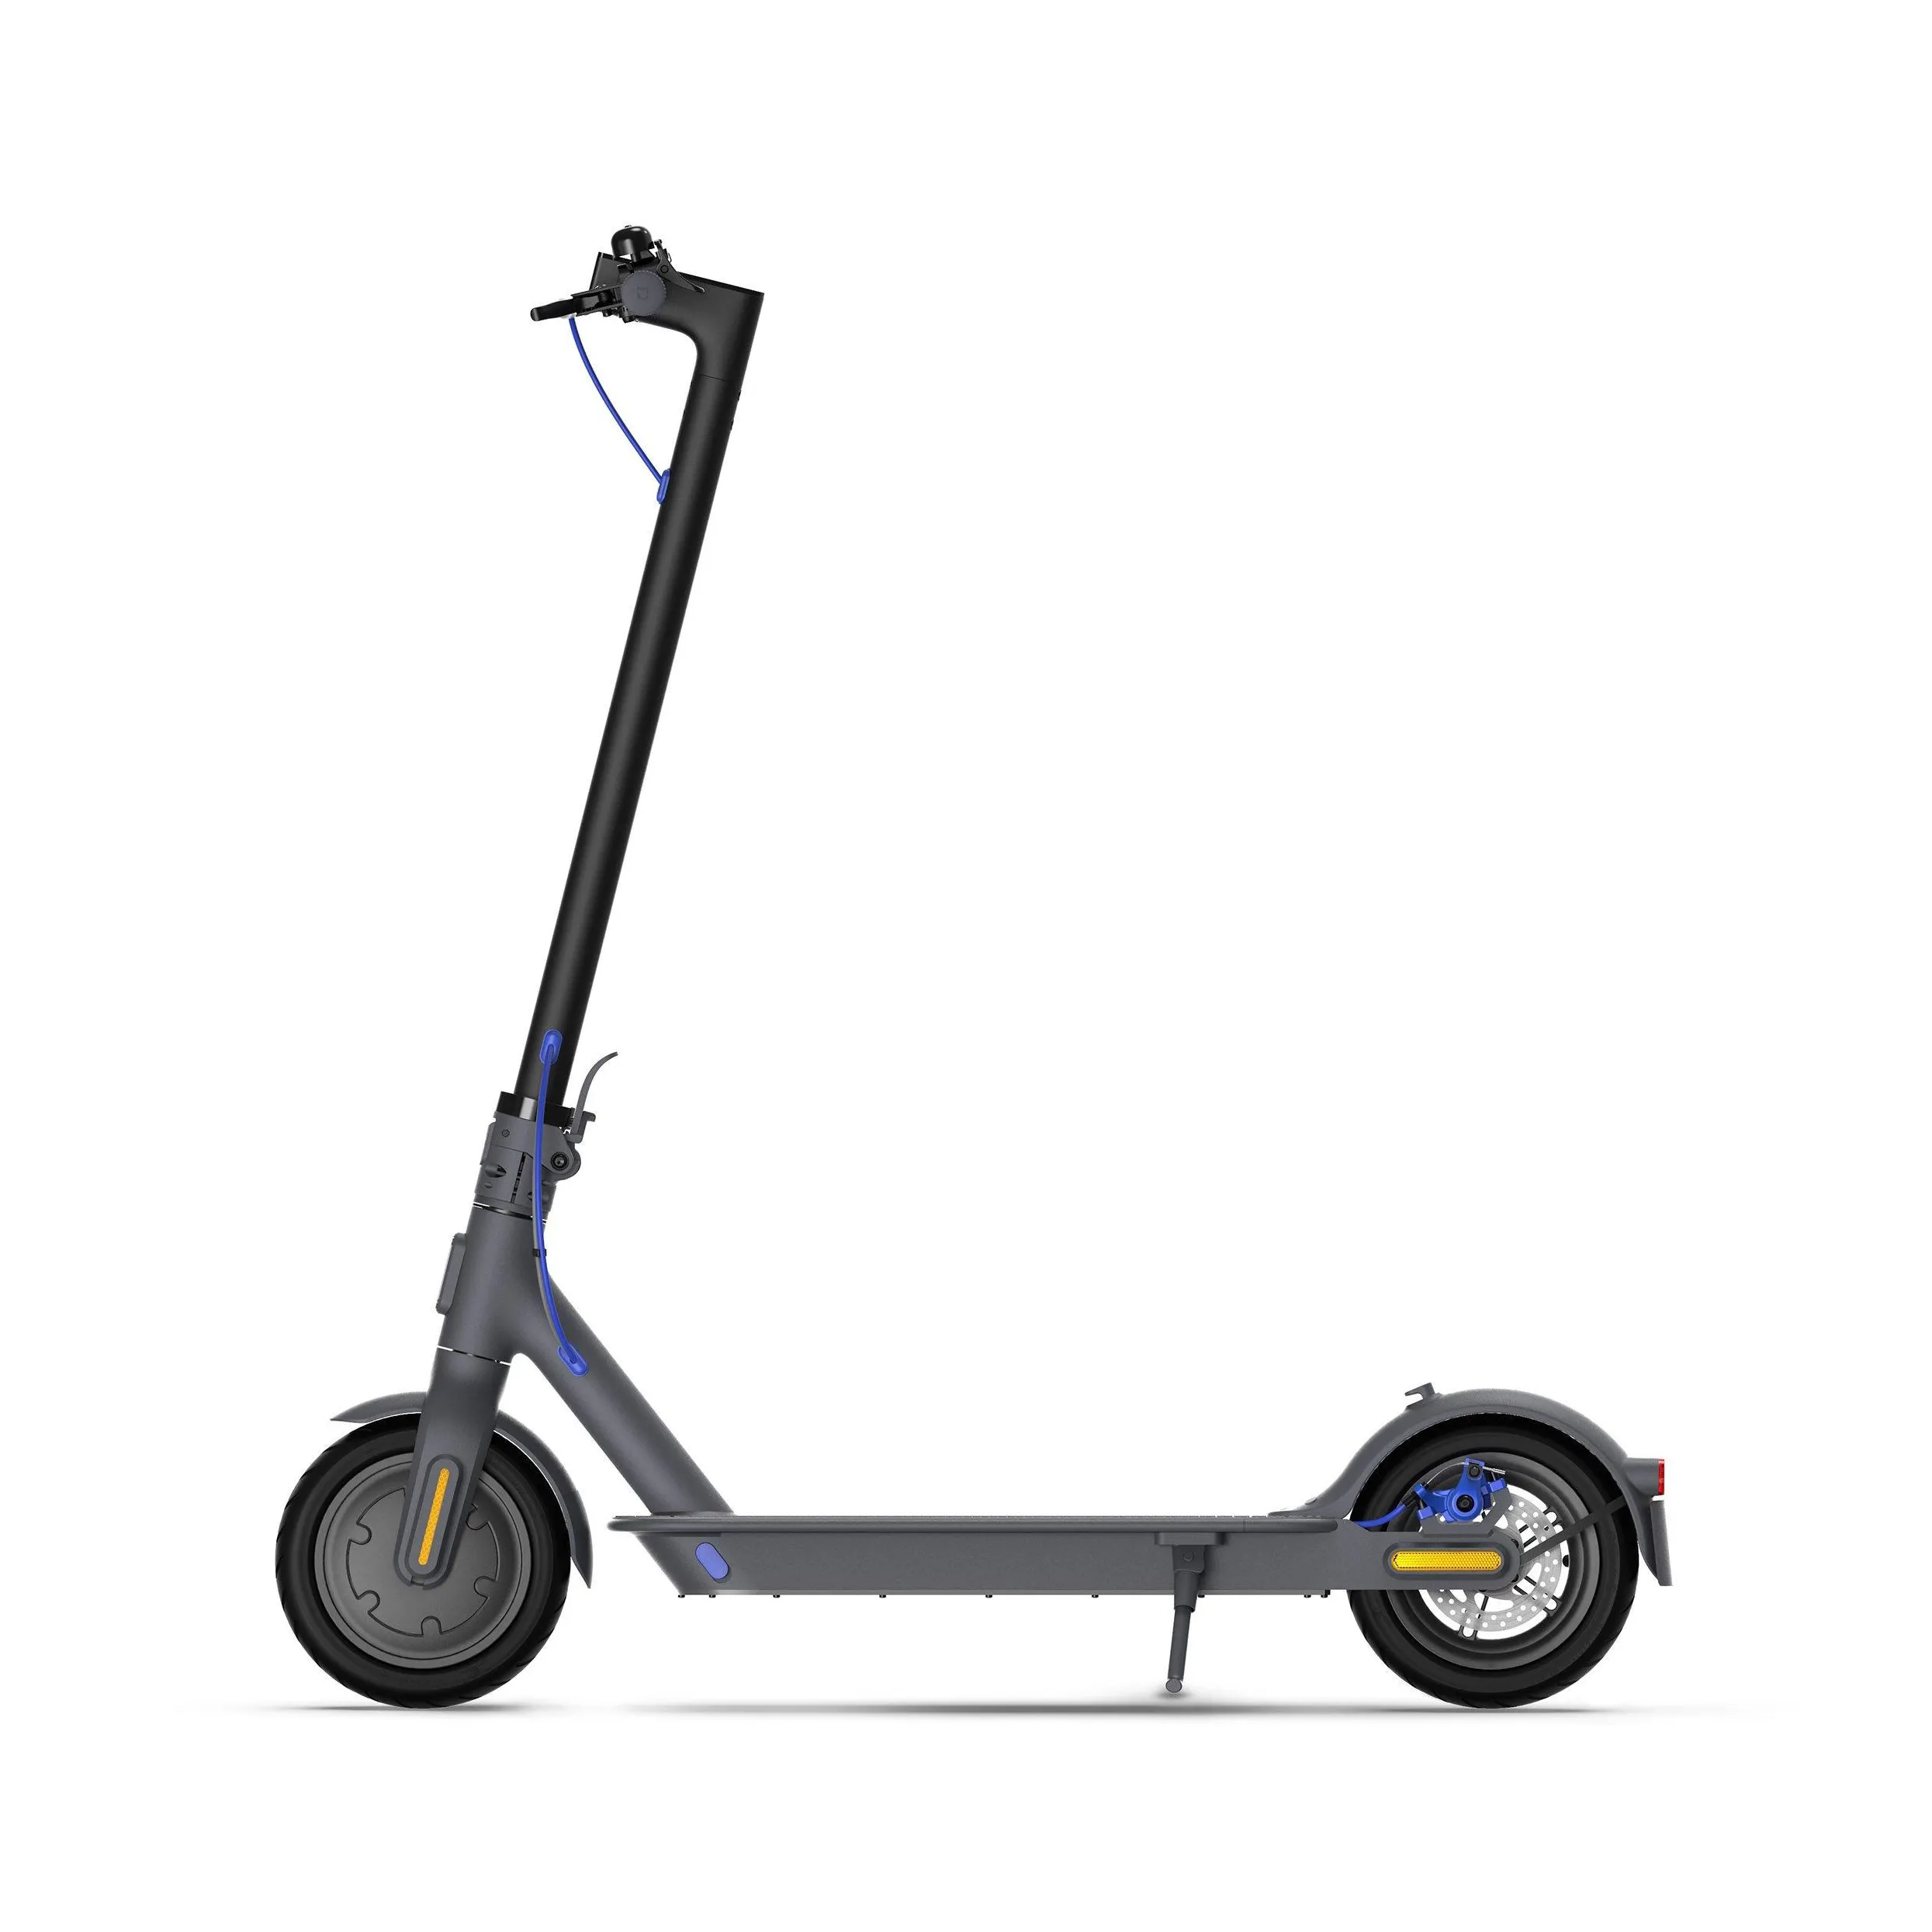 Bajo MOQ barato scooter eléctrico rápido zapatos deportivos/oridingway citycoco rueda grande Scooter Eléctrico de alta calidad